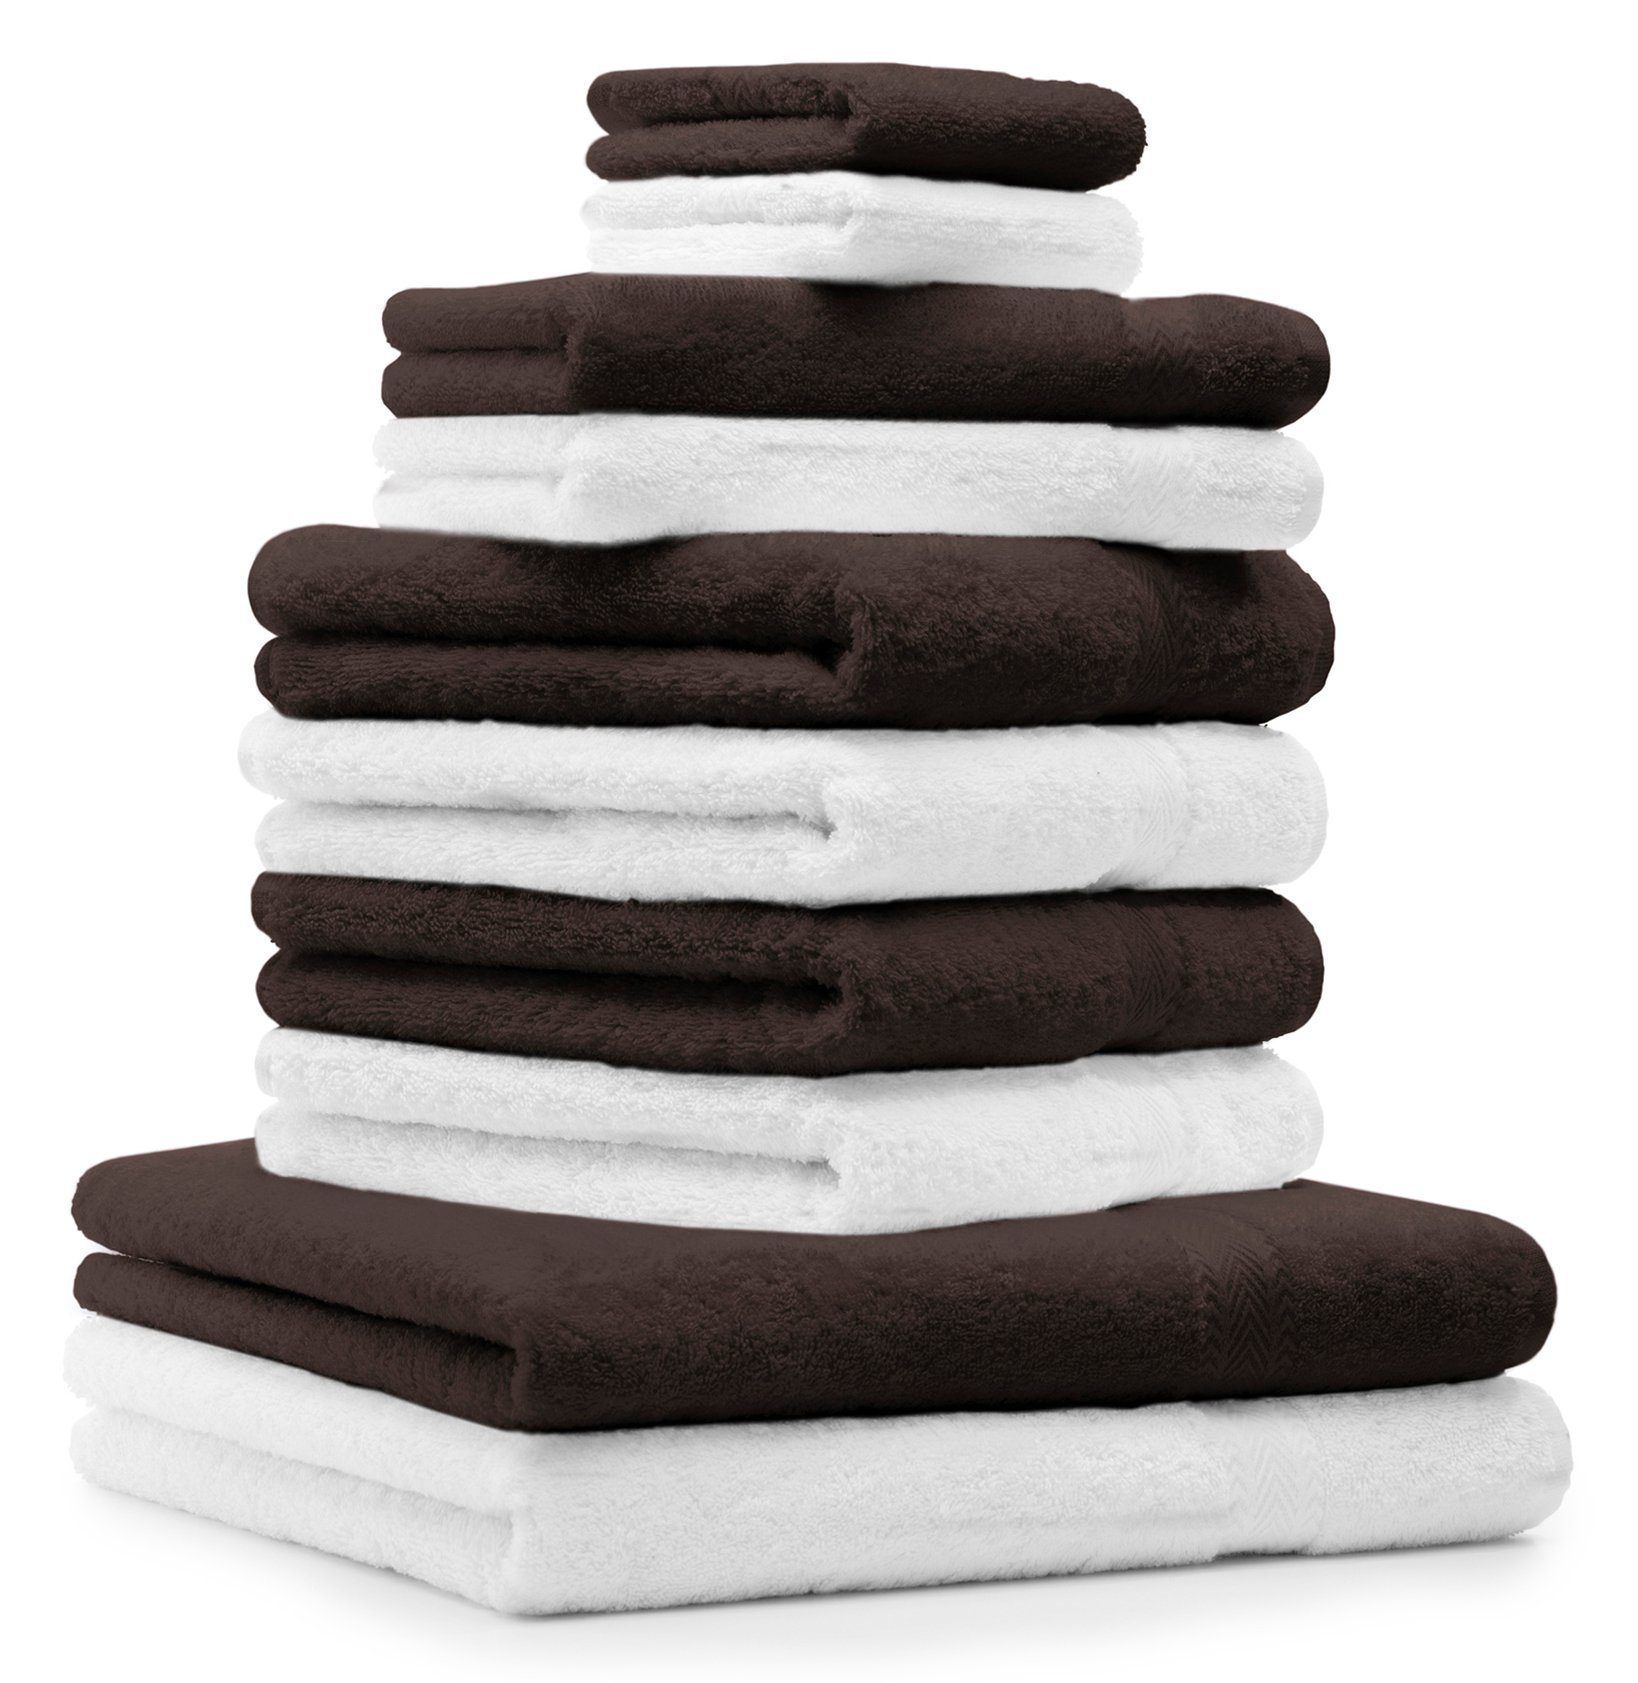 Betz Handtuch Set 10-TLG. Handtuch-Set Premium Farbe Weiß und Dunkelbraun, 100% Baumwolle